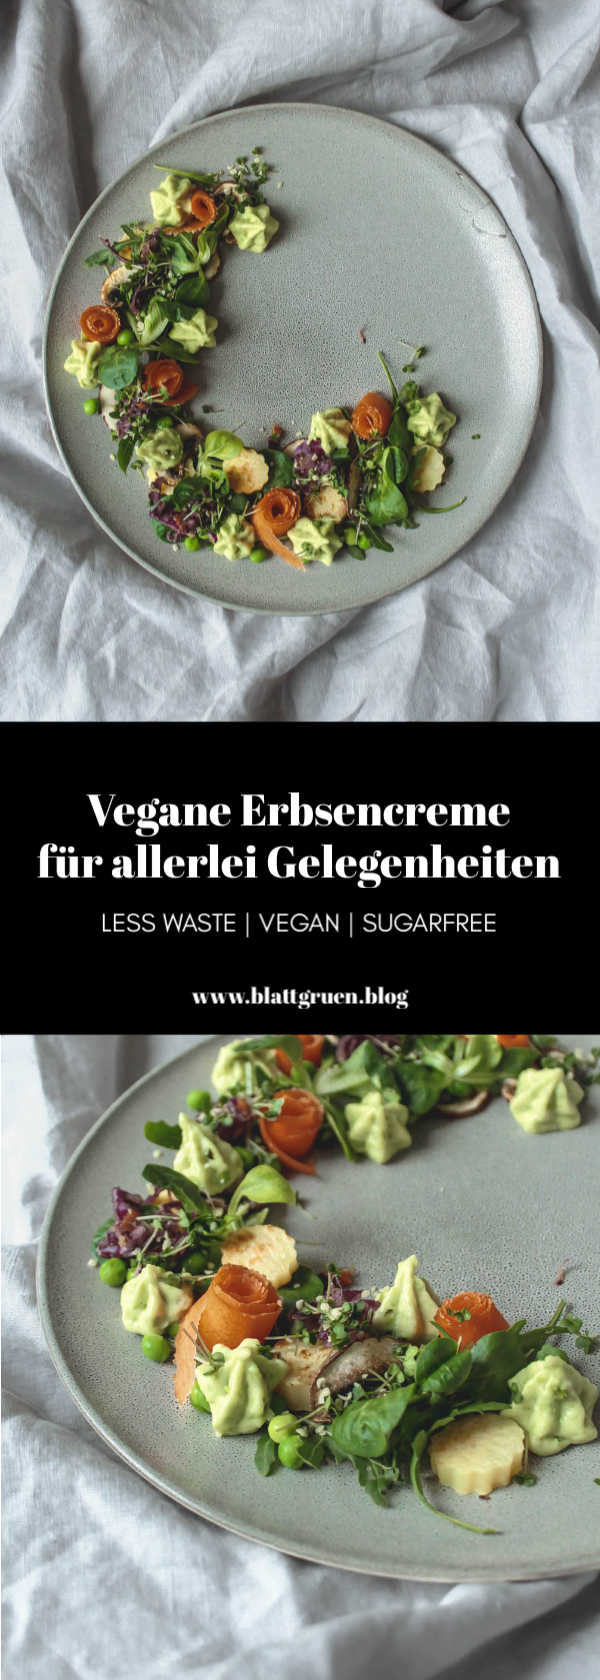 Vegane Erbsencreme für allerlei gustatorische Abenteuer in der Küche {less waste} | Blattgrün